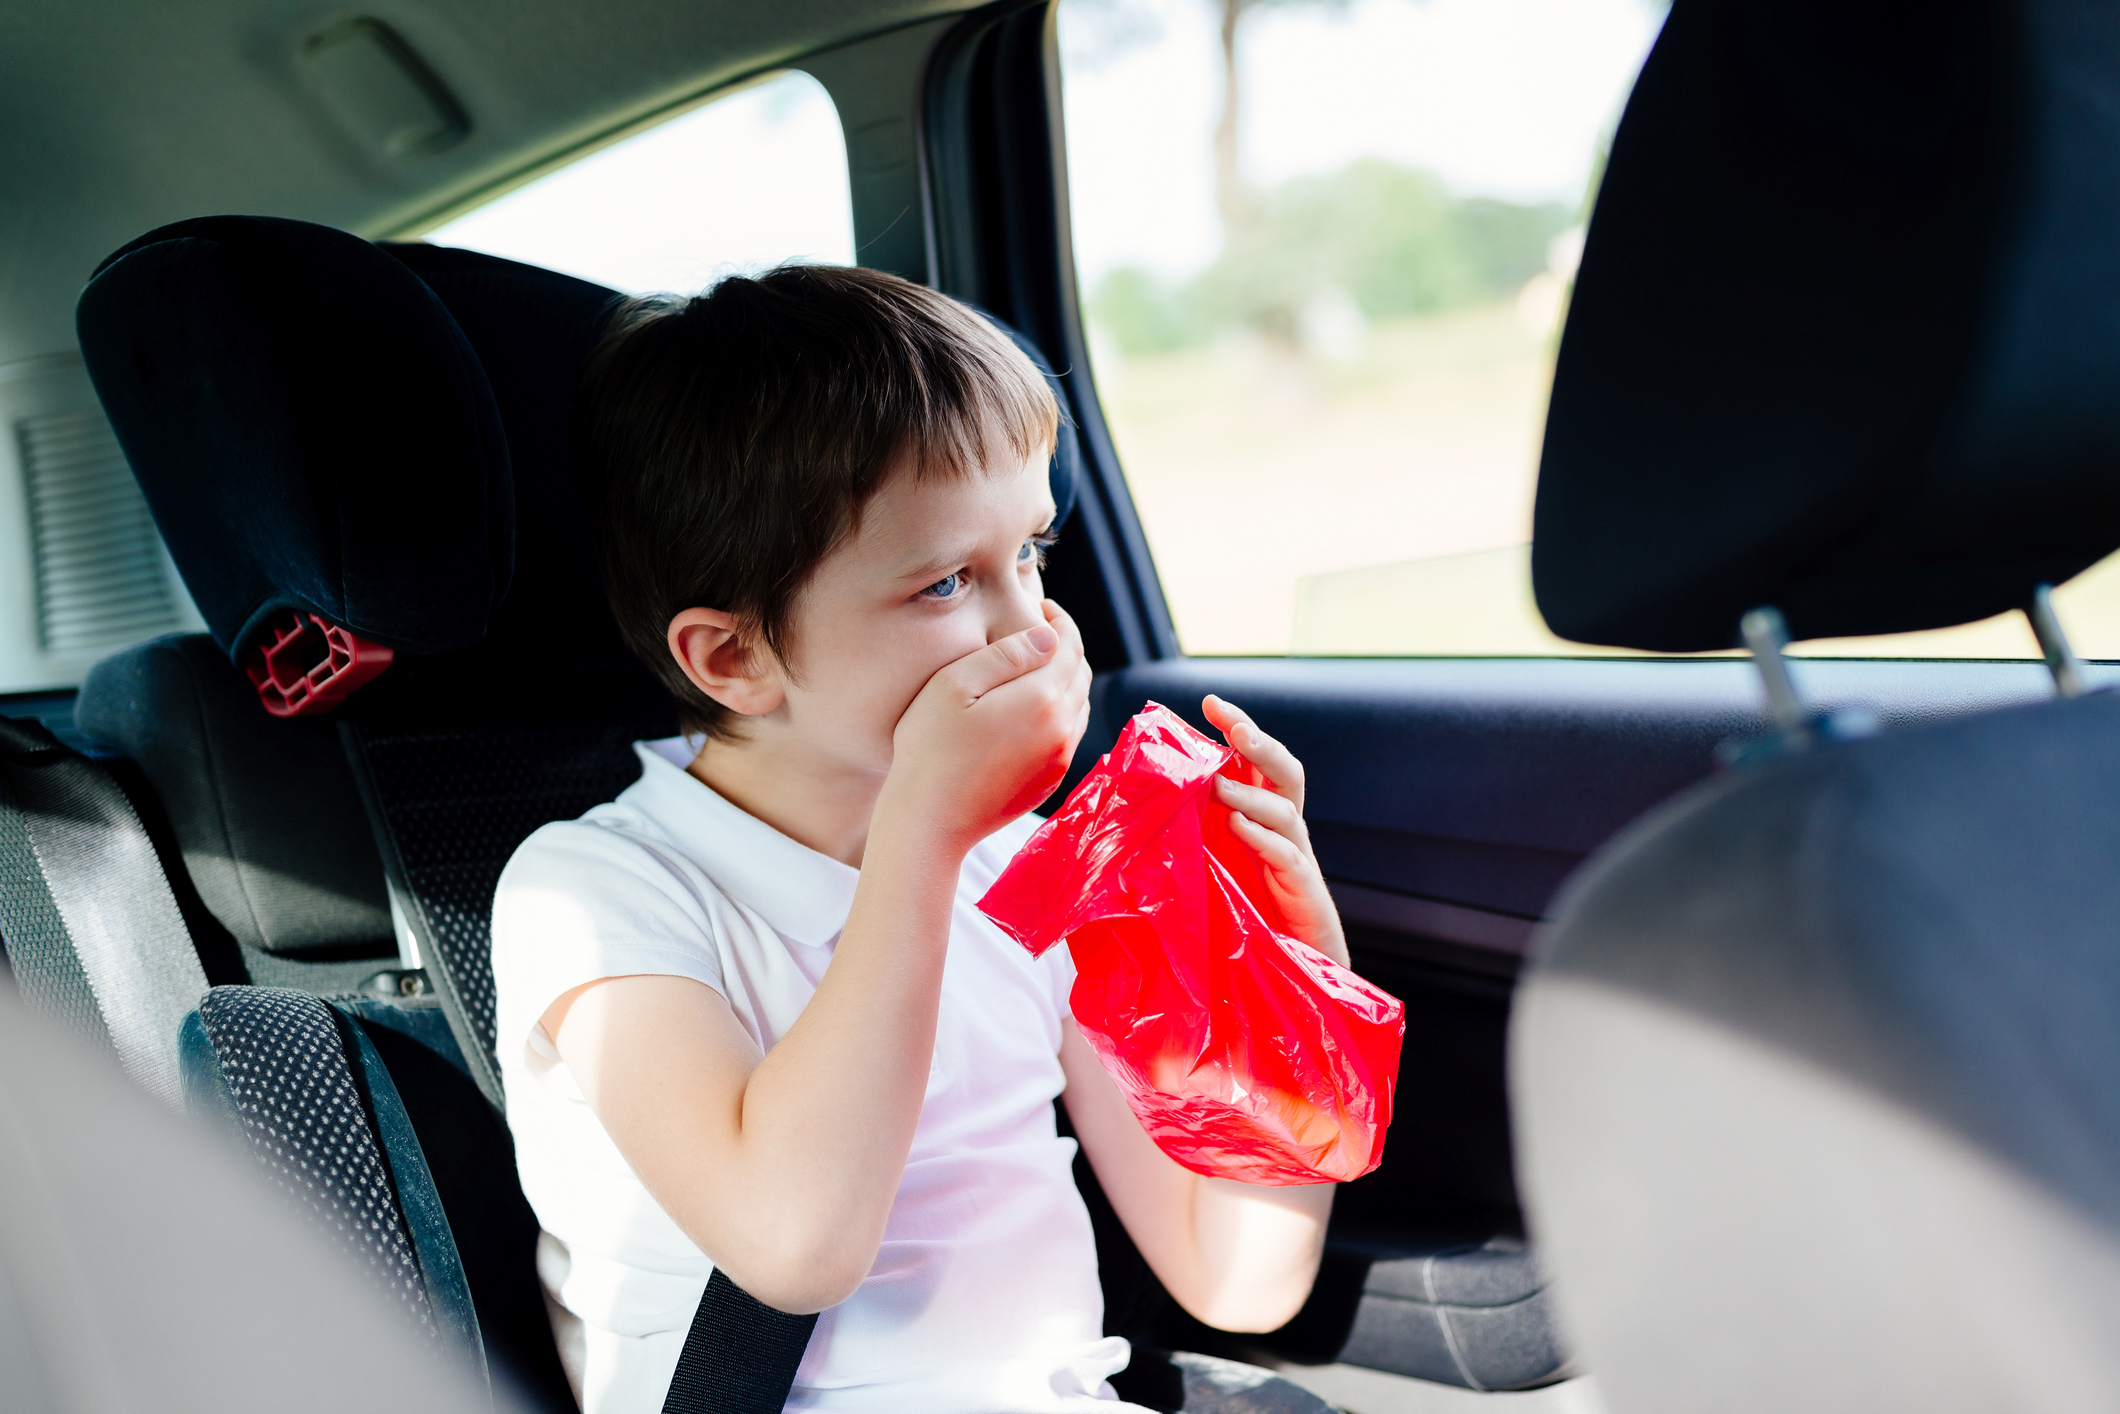 Chlapec v autě držící kapsu na zvracení a ústa. Je mu špatně, pocit na zvracení, tíha, kinetóza